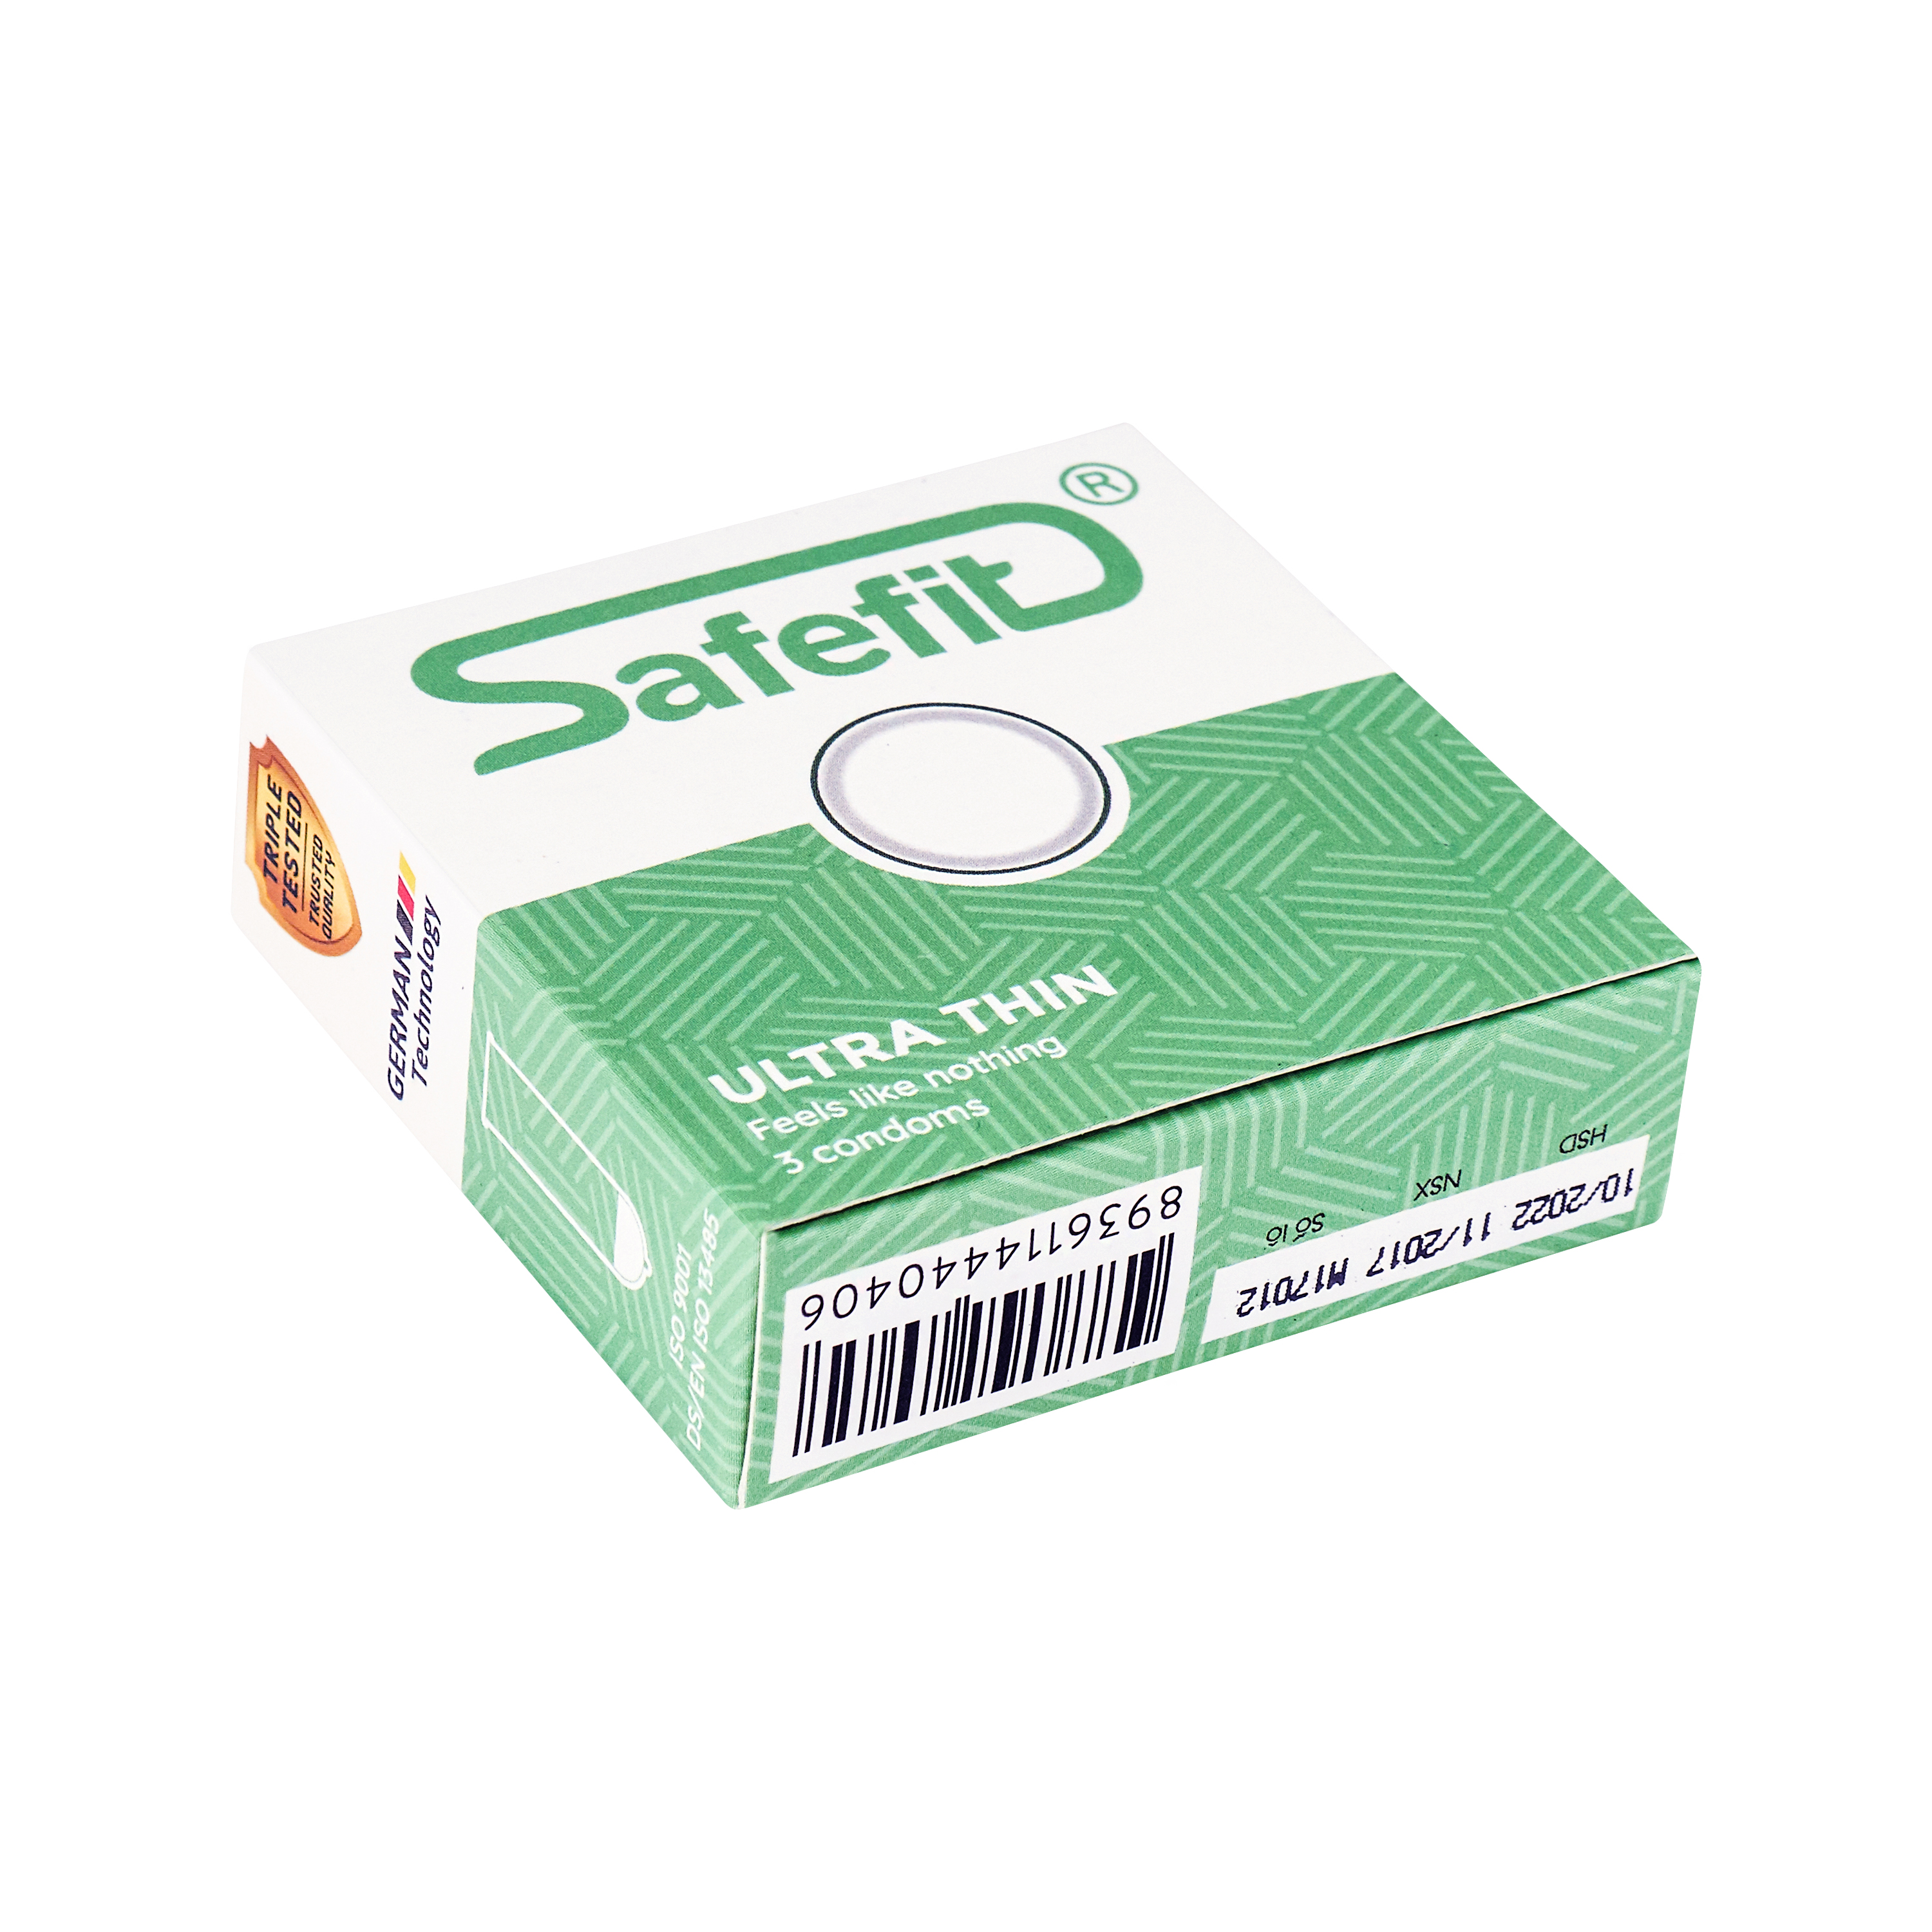 Bao cao su siêu mỏng SafeFit Untra thin - hộp 3 chiếc